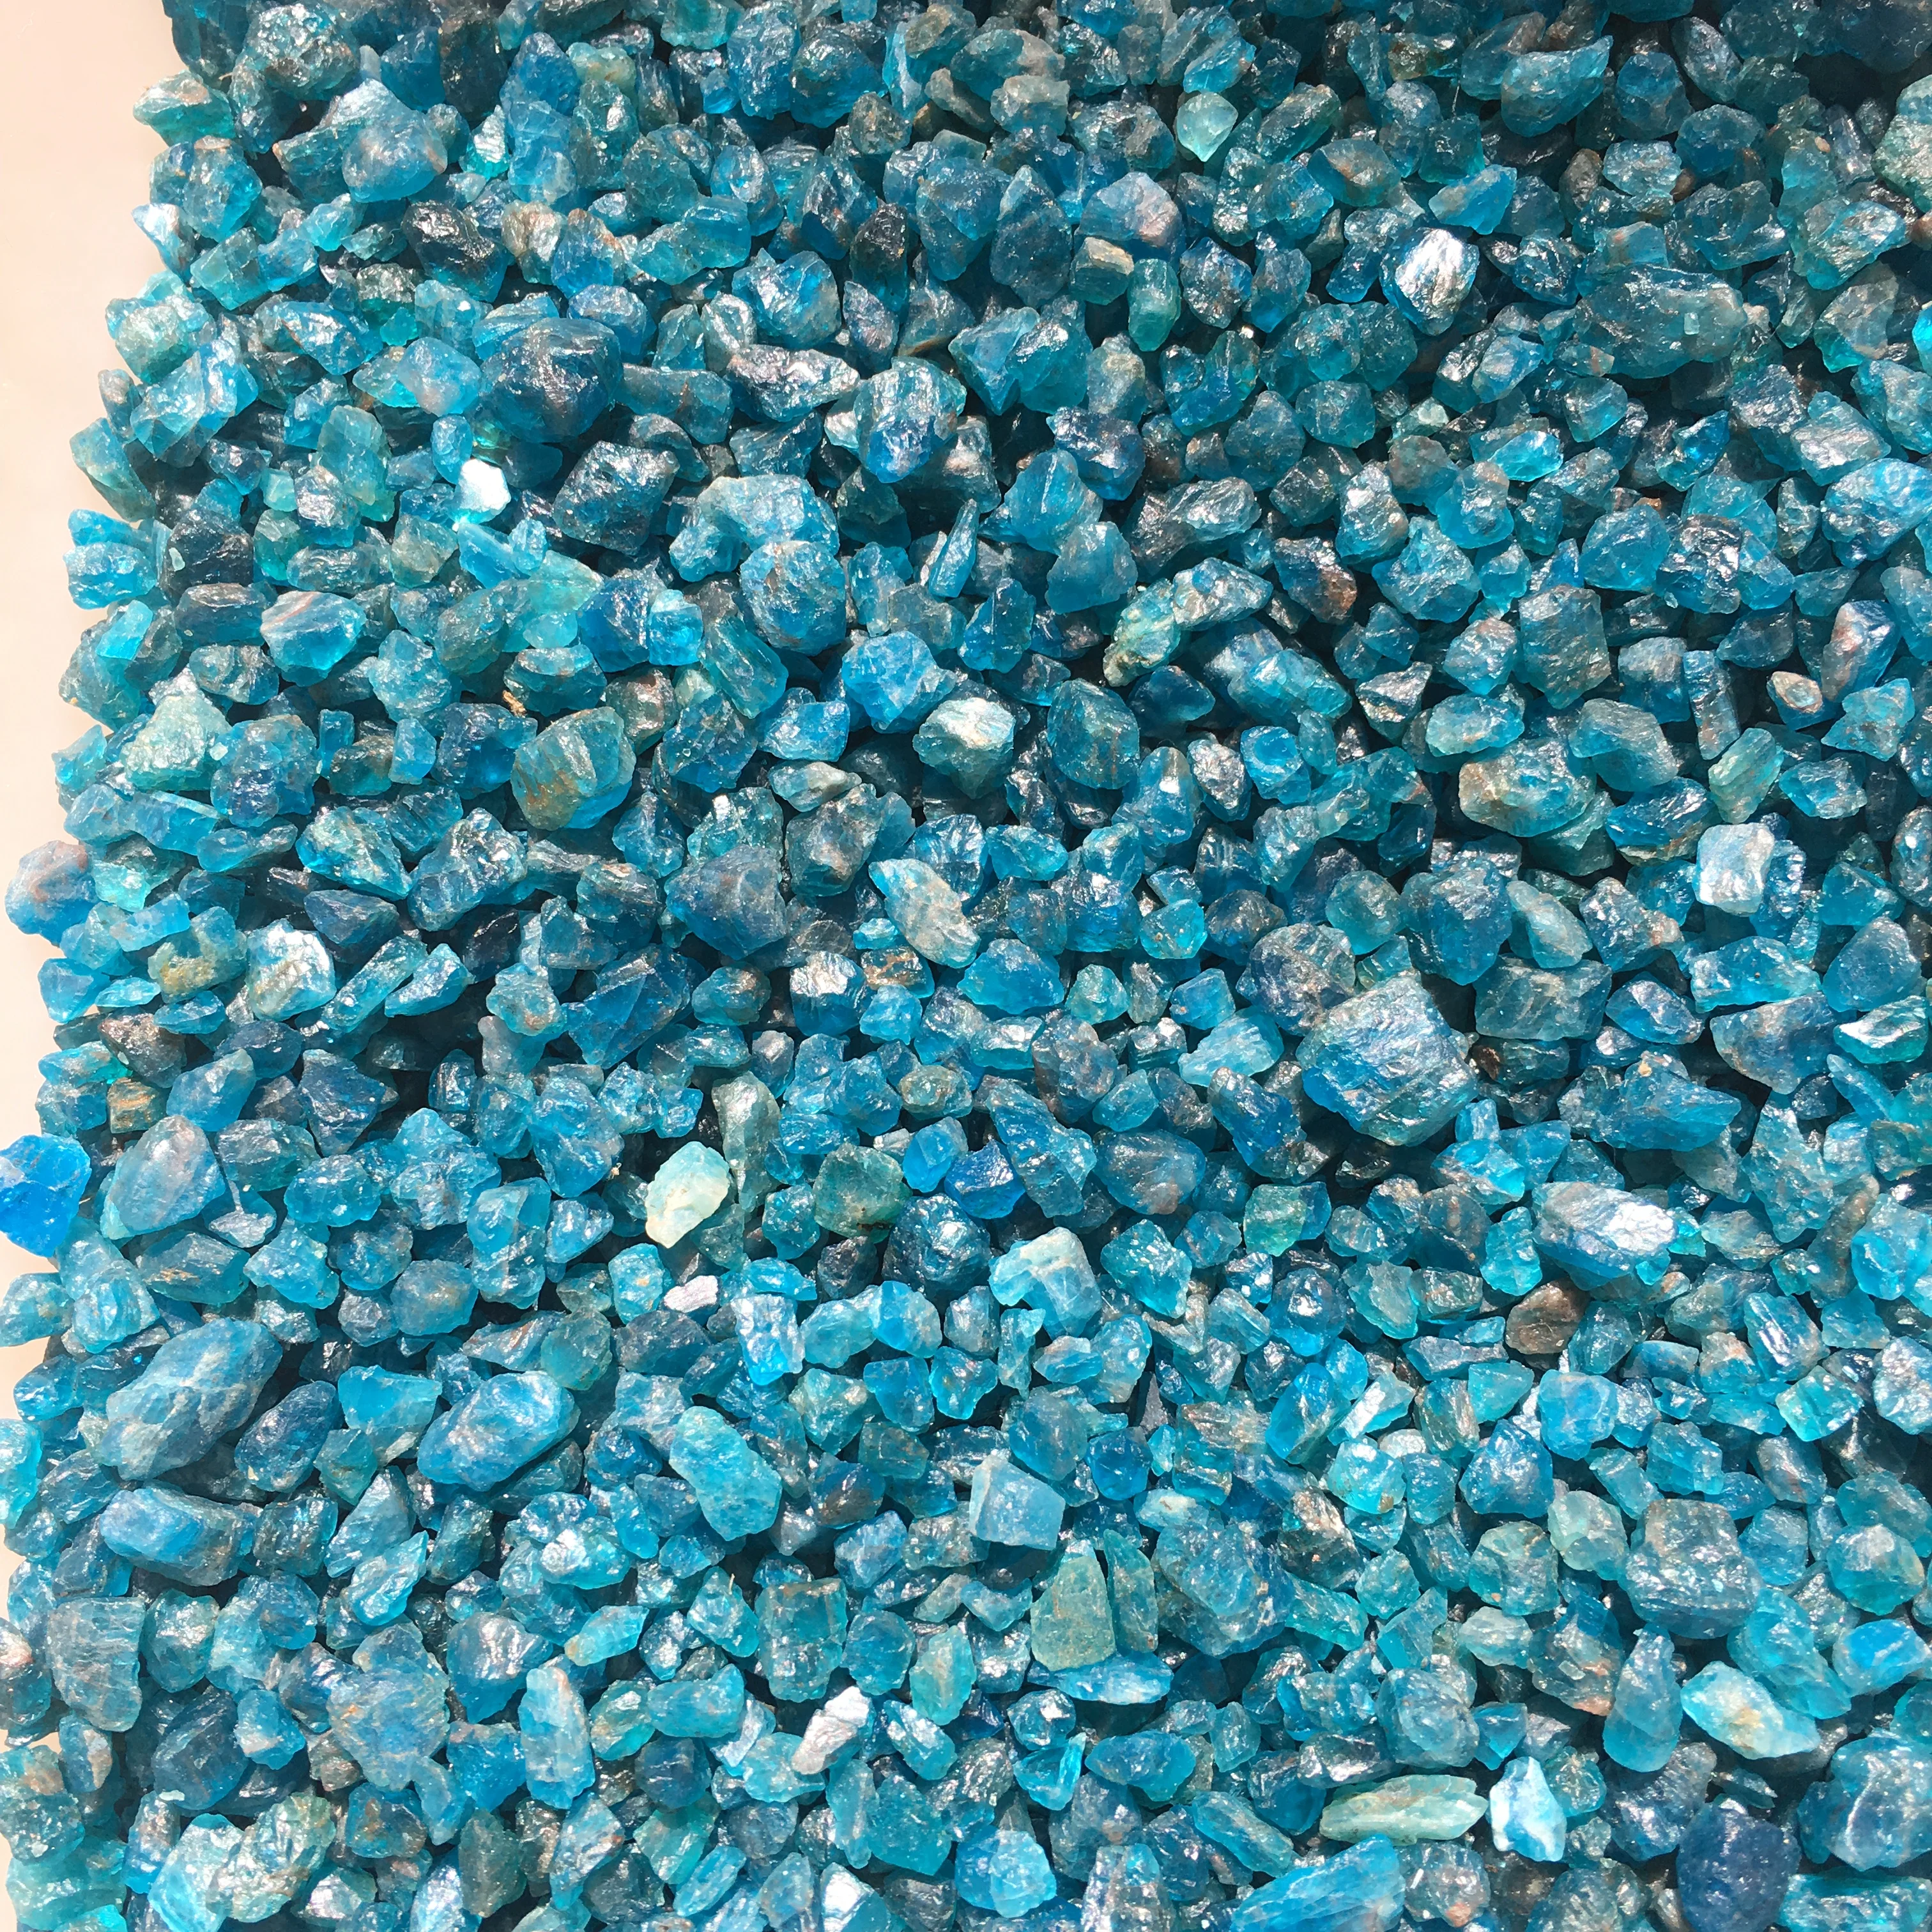 1500 г натурального необработанного синего апатита Необработанные камни Хрустальный гравий Минералы и камни Образец необработанных драгоценных камней Изображение 3